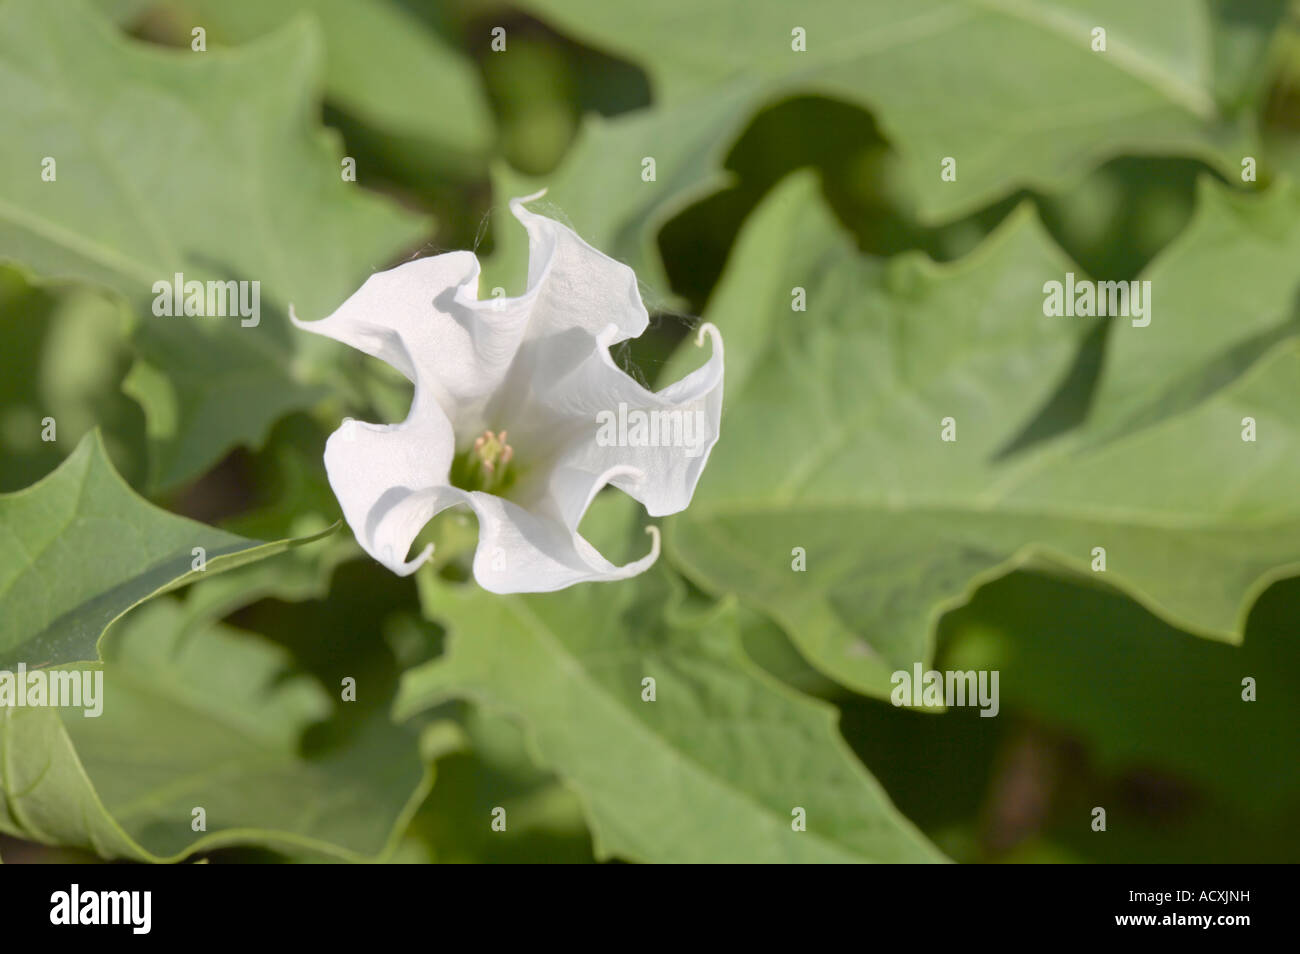 Datura Stramonium - Jimson Weed flower and leaves Stock Photo